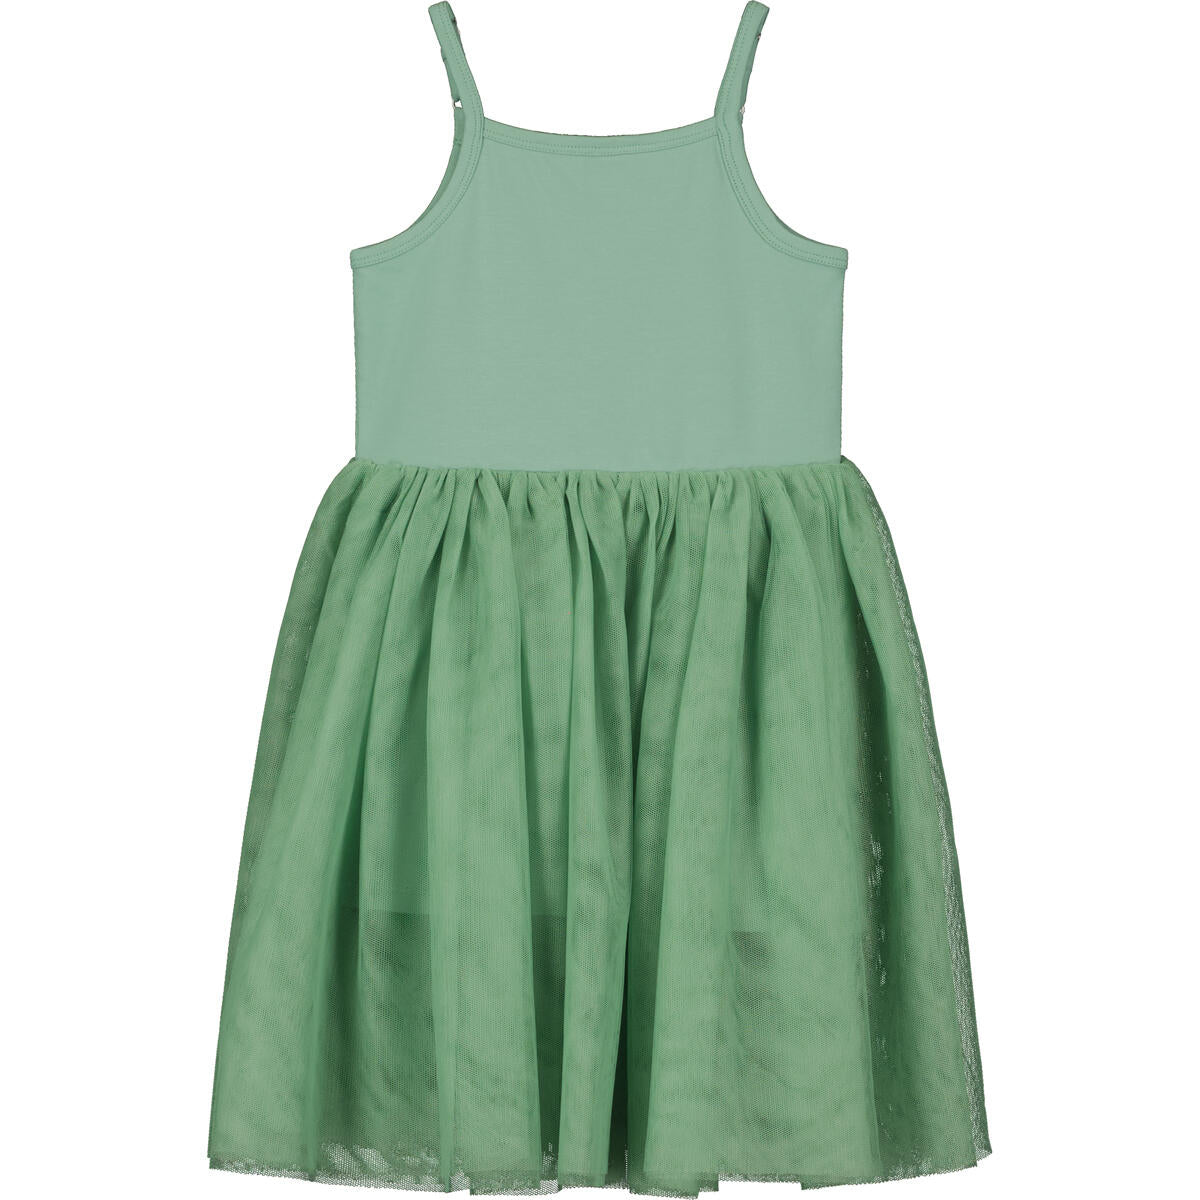 kaia green tutu dress